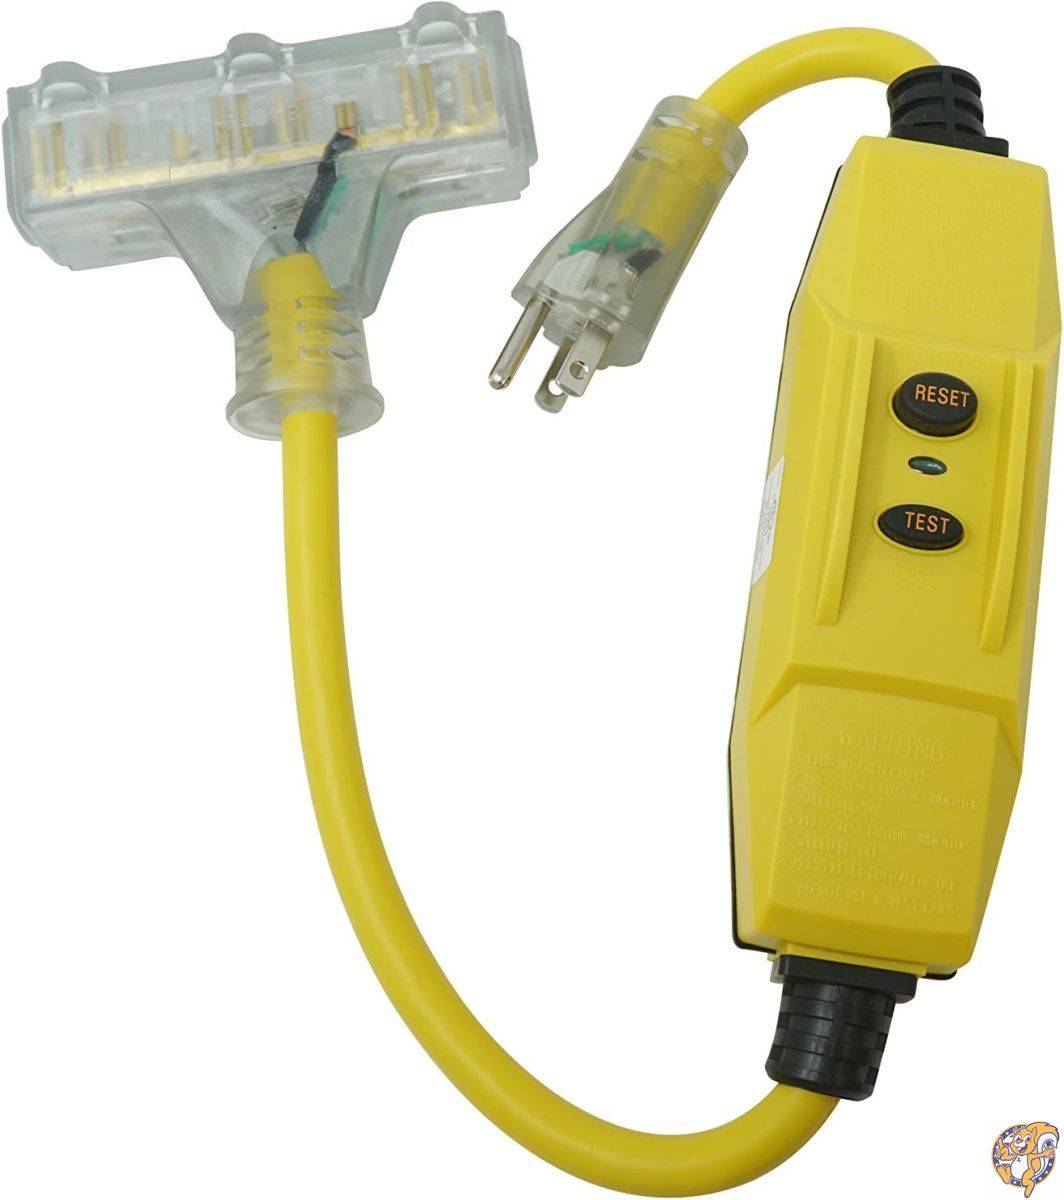 楽天アメリカ輸入ランドTRC 26020008-6 12/3 Gauge Shockshield GFCI Protected In-line Tri-Cord Set with 3-Outlets, 2-Feet, 15-Amp, Yellow by